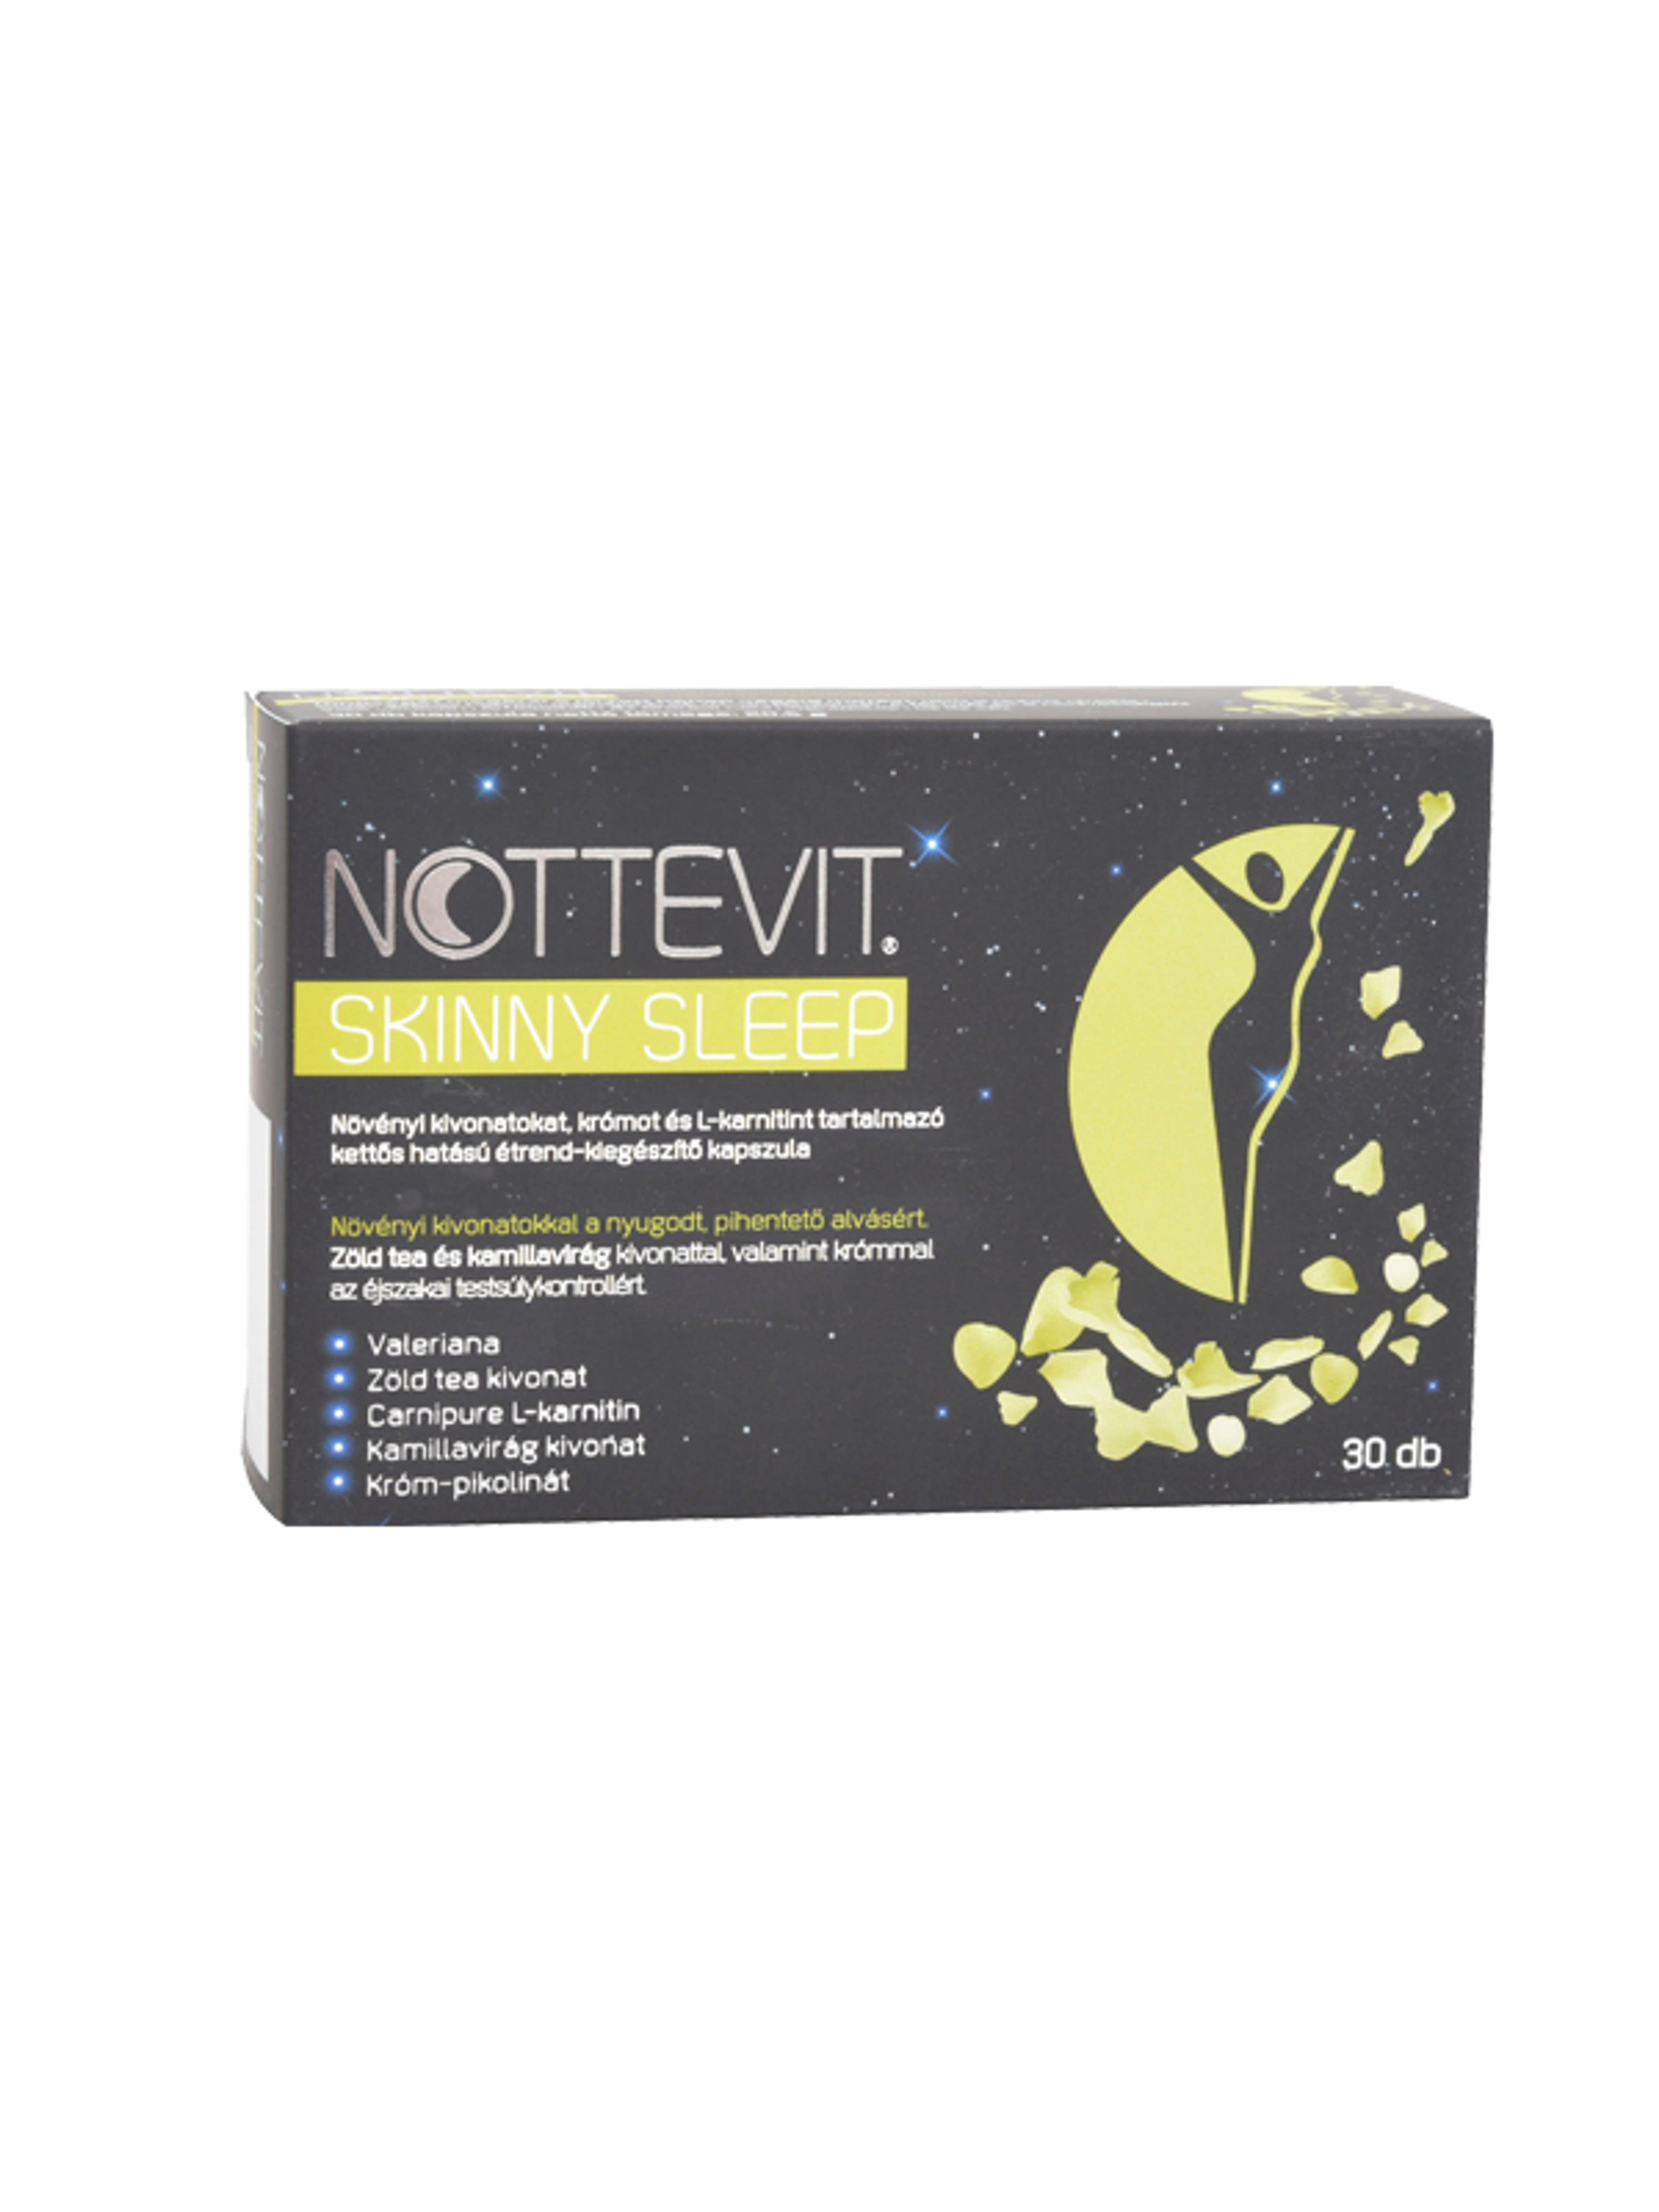 Nottevit skinny sleep étrendkiegészítő kapszula - 30 db-1